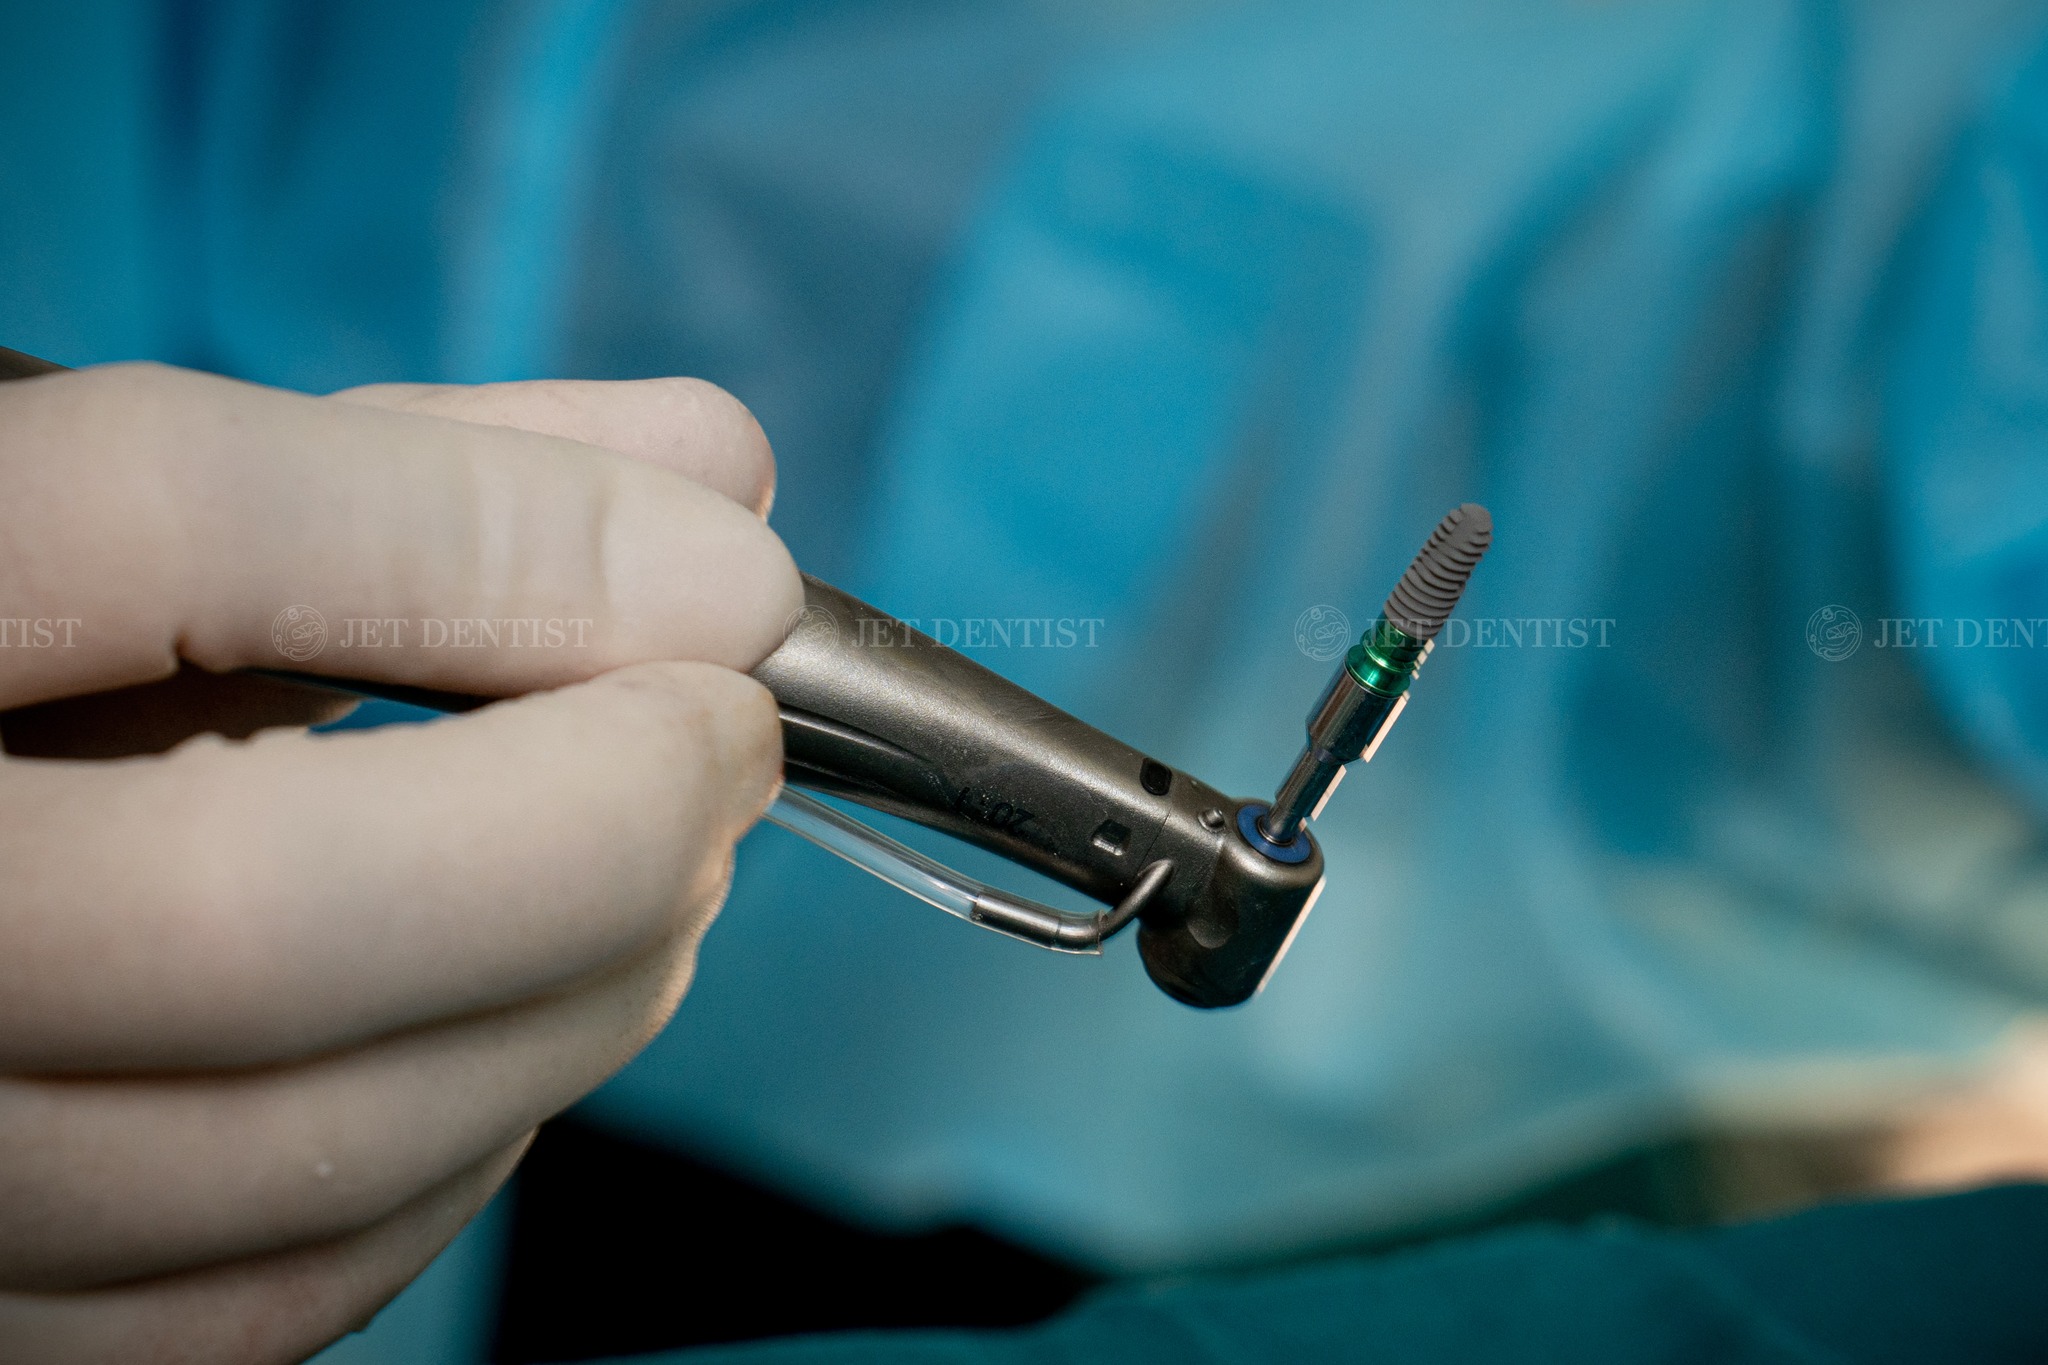 Cấy Implant tức thì là kỹ thuật nhổ răng và cấy Implant tại cùng 1 vị trí trong cùng 1 ca phẫu thuật